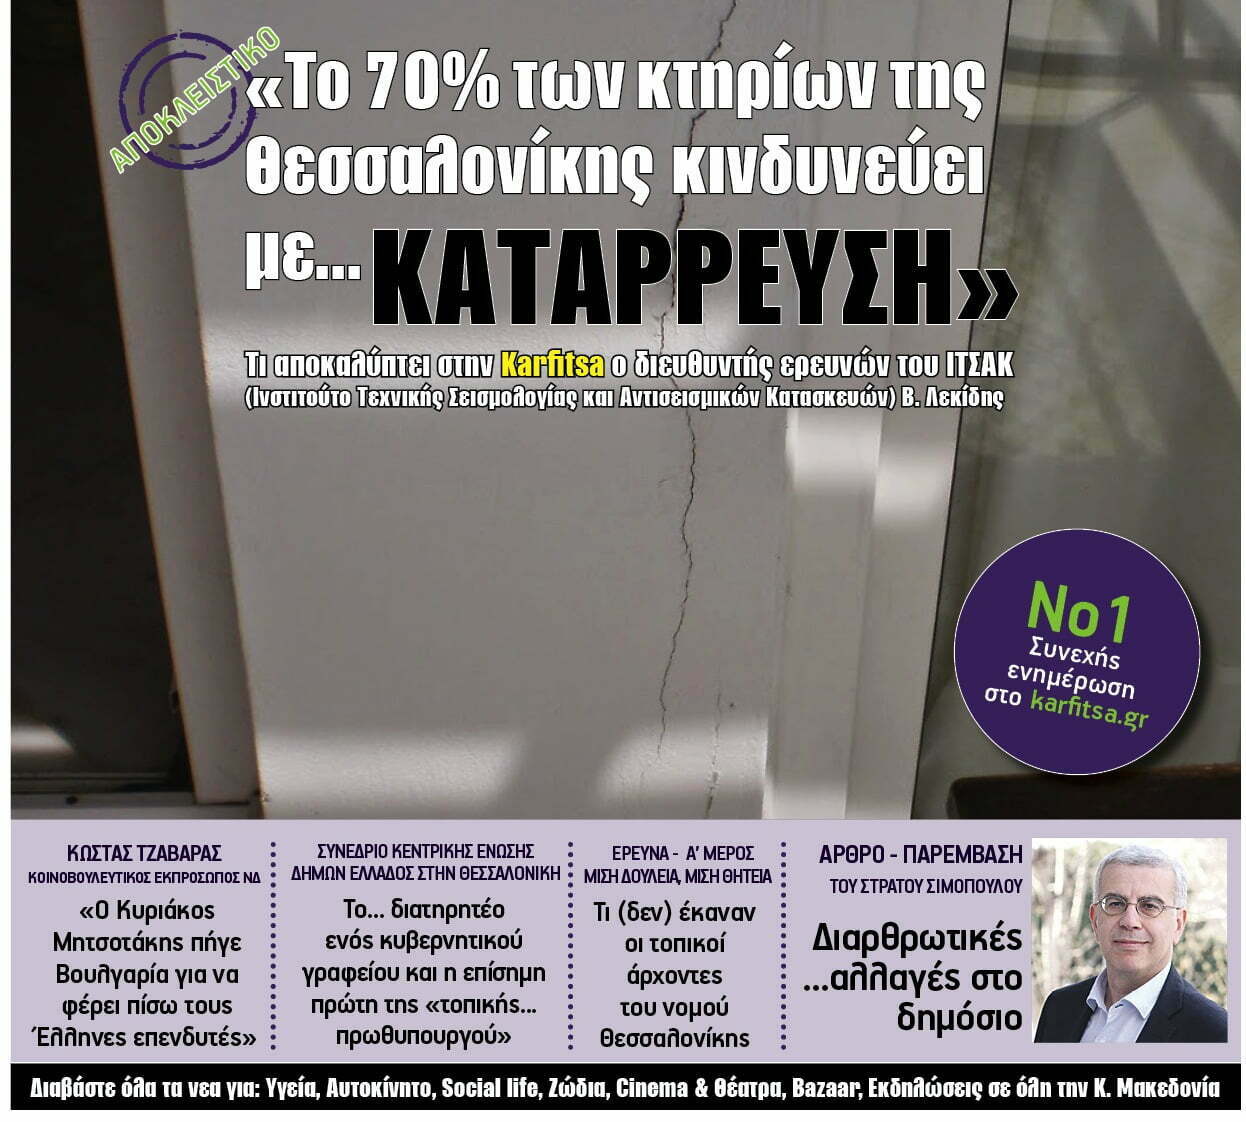 Ολόκληρη η εφημερίδα karfitsa που κυκλοφορεί στην Κ. Μακεδονία με ένα κλικ…